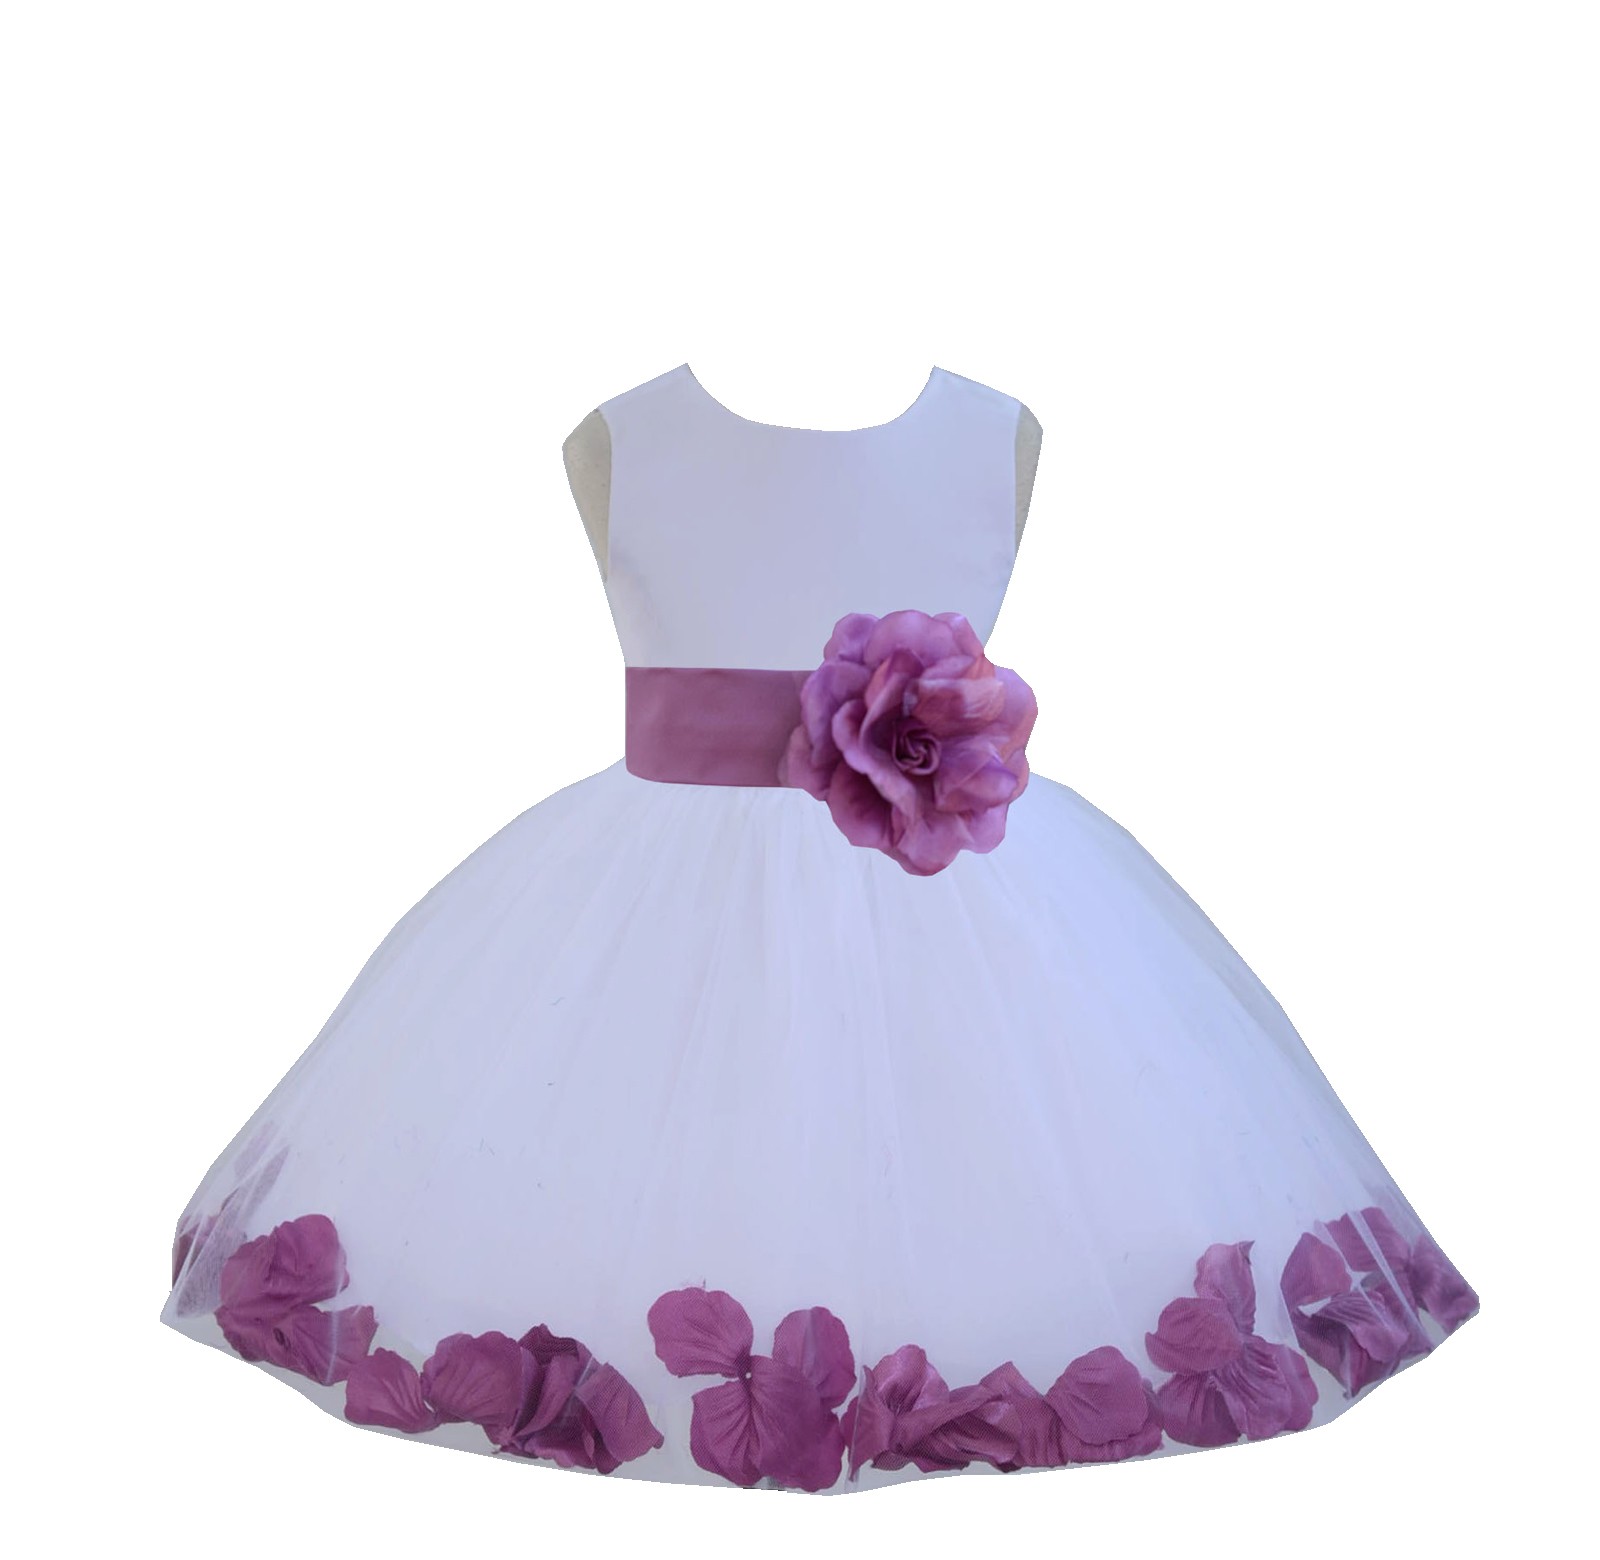 White / Wisteria Tulle Rose Petals Knee Length Flower Girl Dress 306S